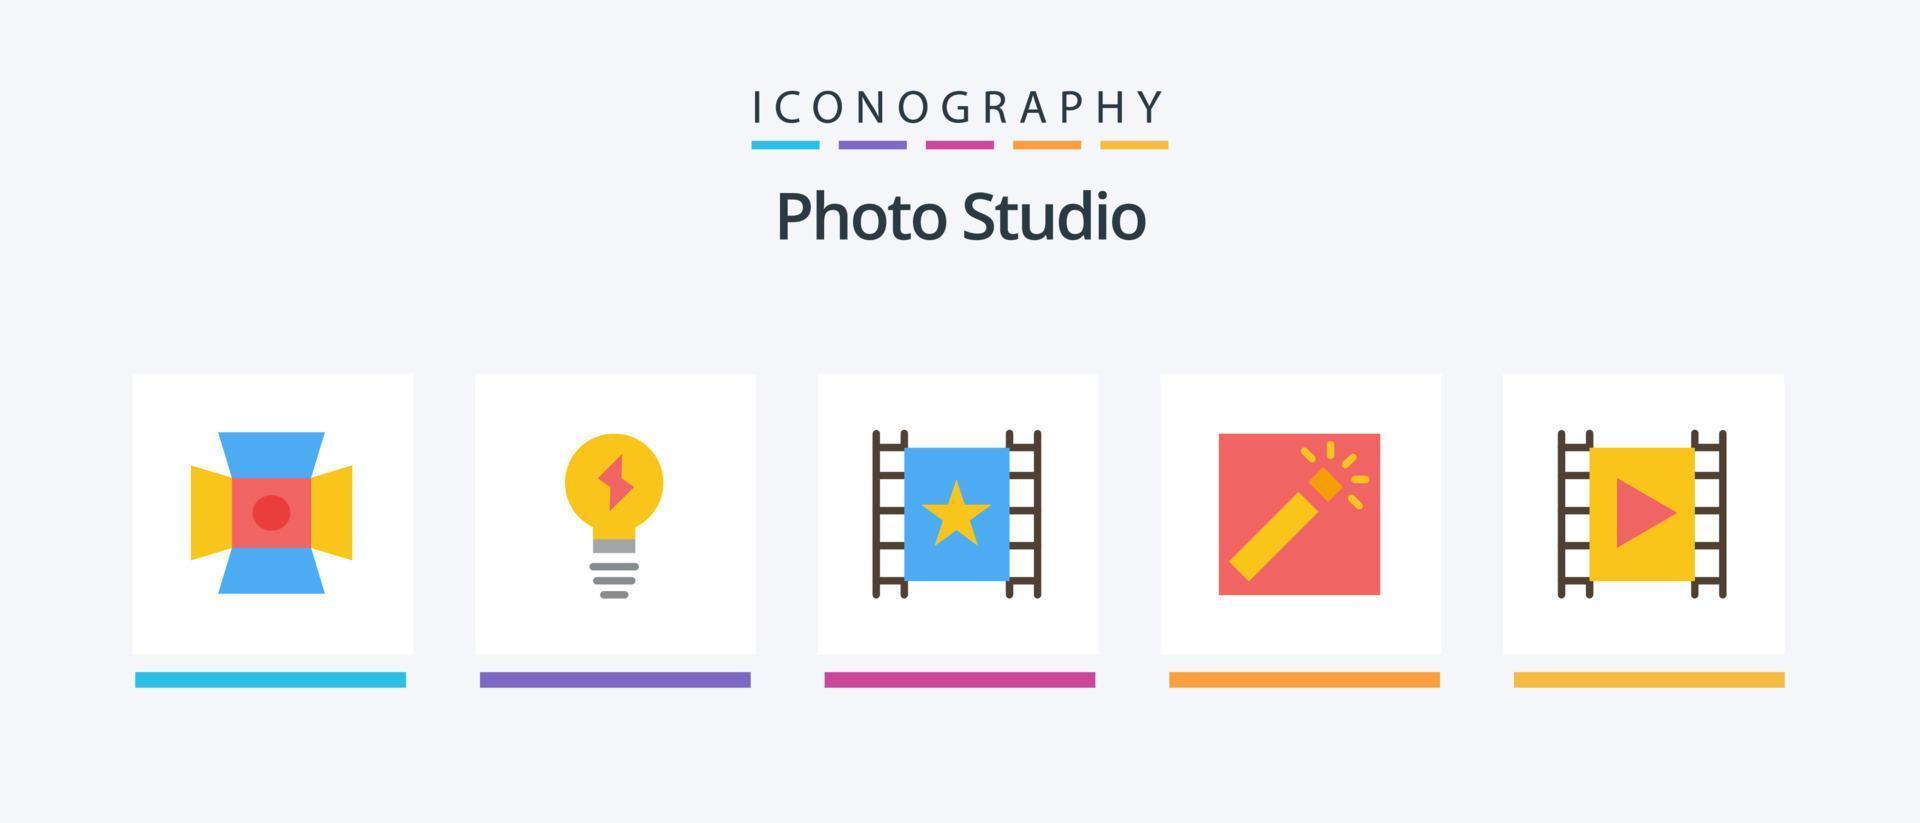 paquete de iconos de 5 planos de estudio fotográfico que incluye multimedia. medios de comunicación. jugador. retocar. fotógrafo. diseño de iconos creativos vector